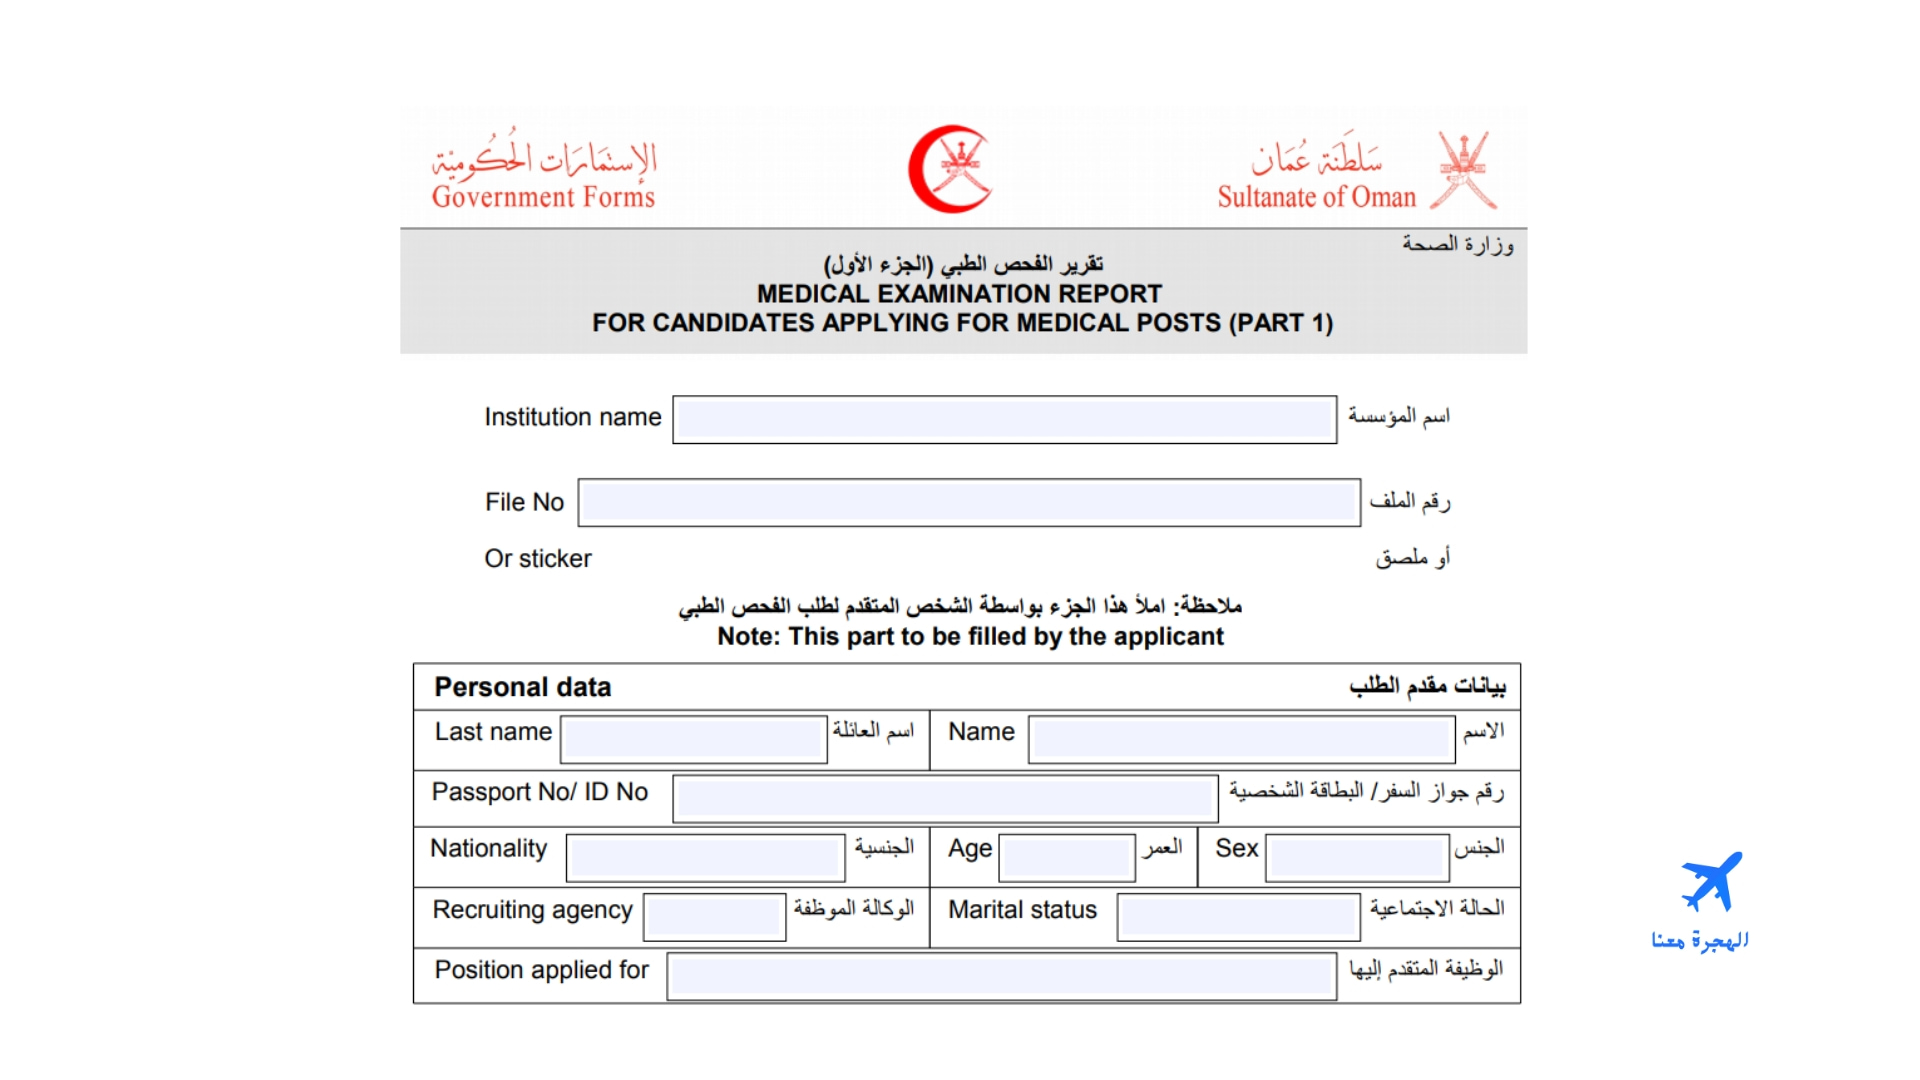 الفحص الطبي للاقامة في سلطنة عمان